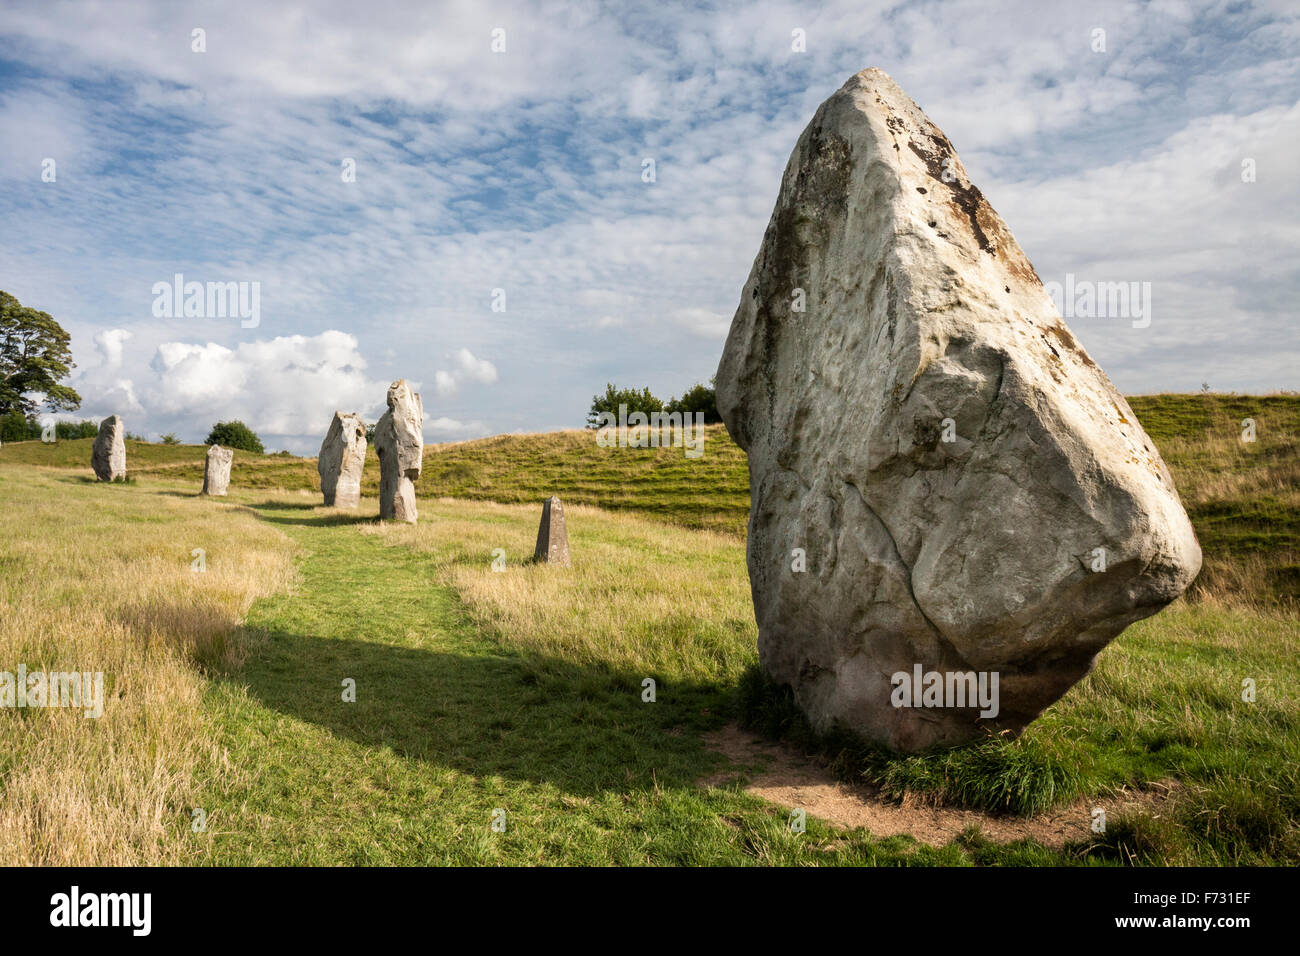 Megaliths at Avebury stone circle, Avebury, Wiltshire England United Kingdom Stock Photo